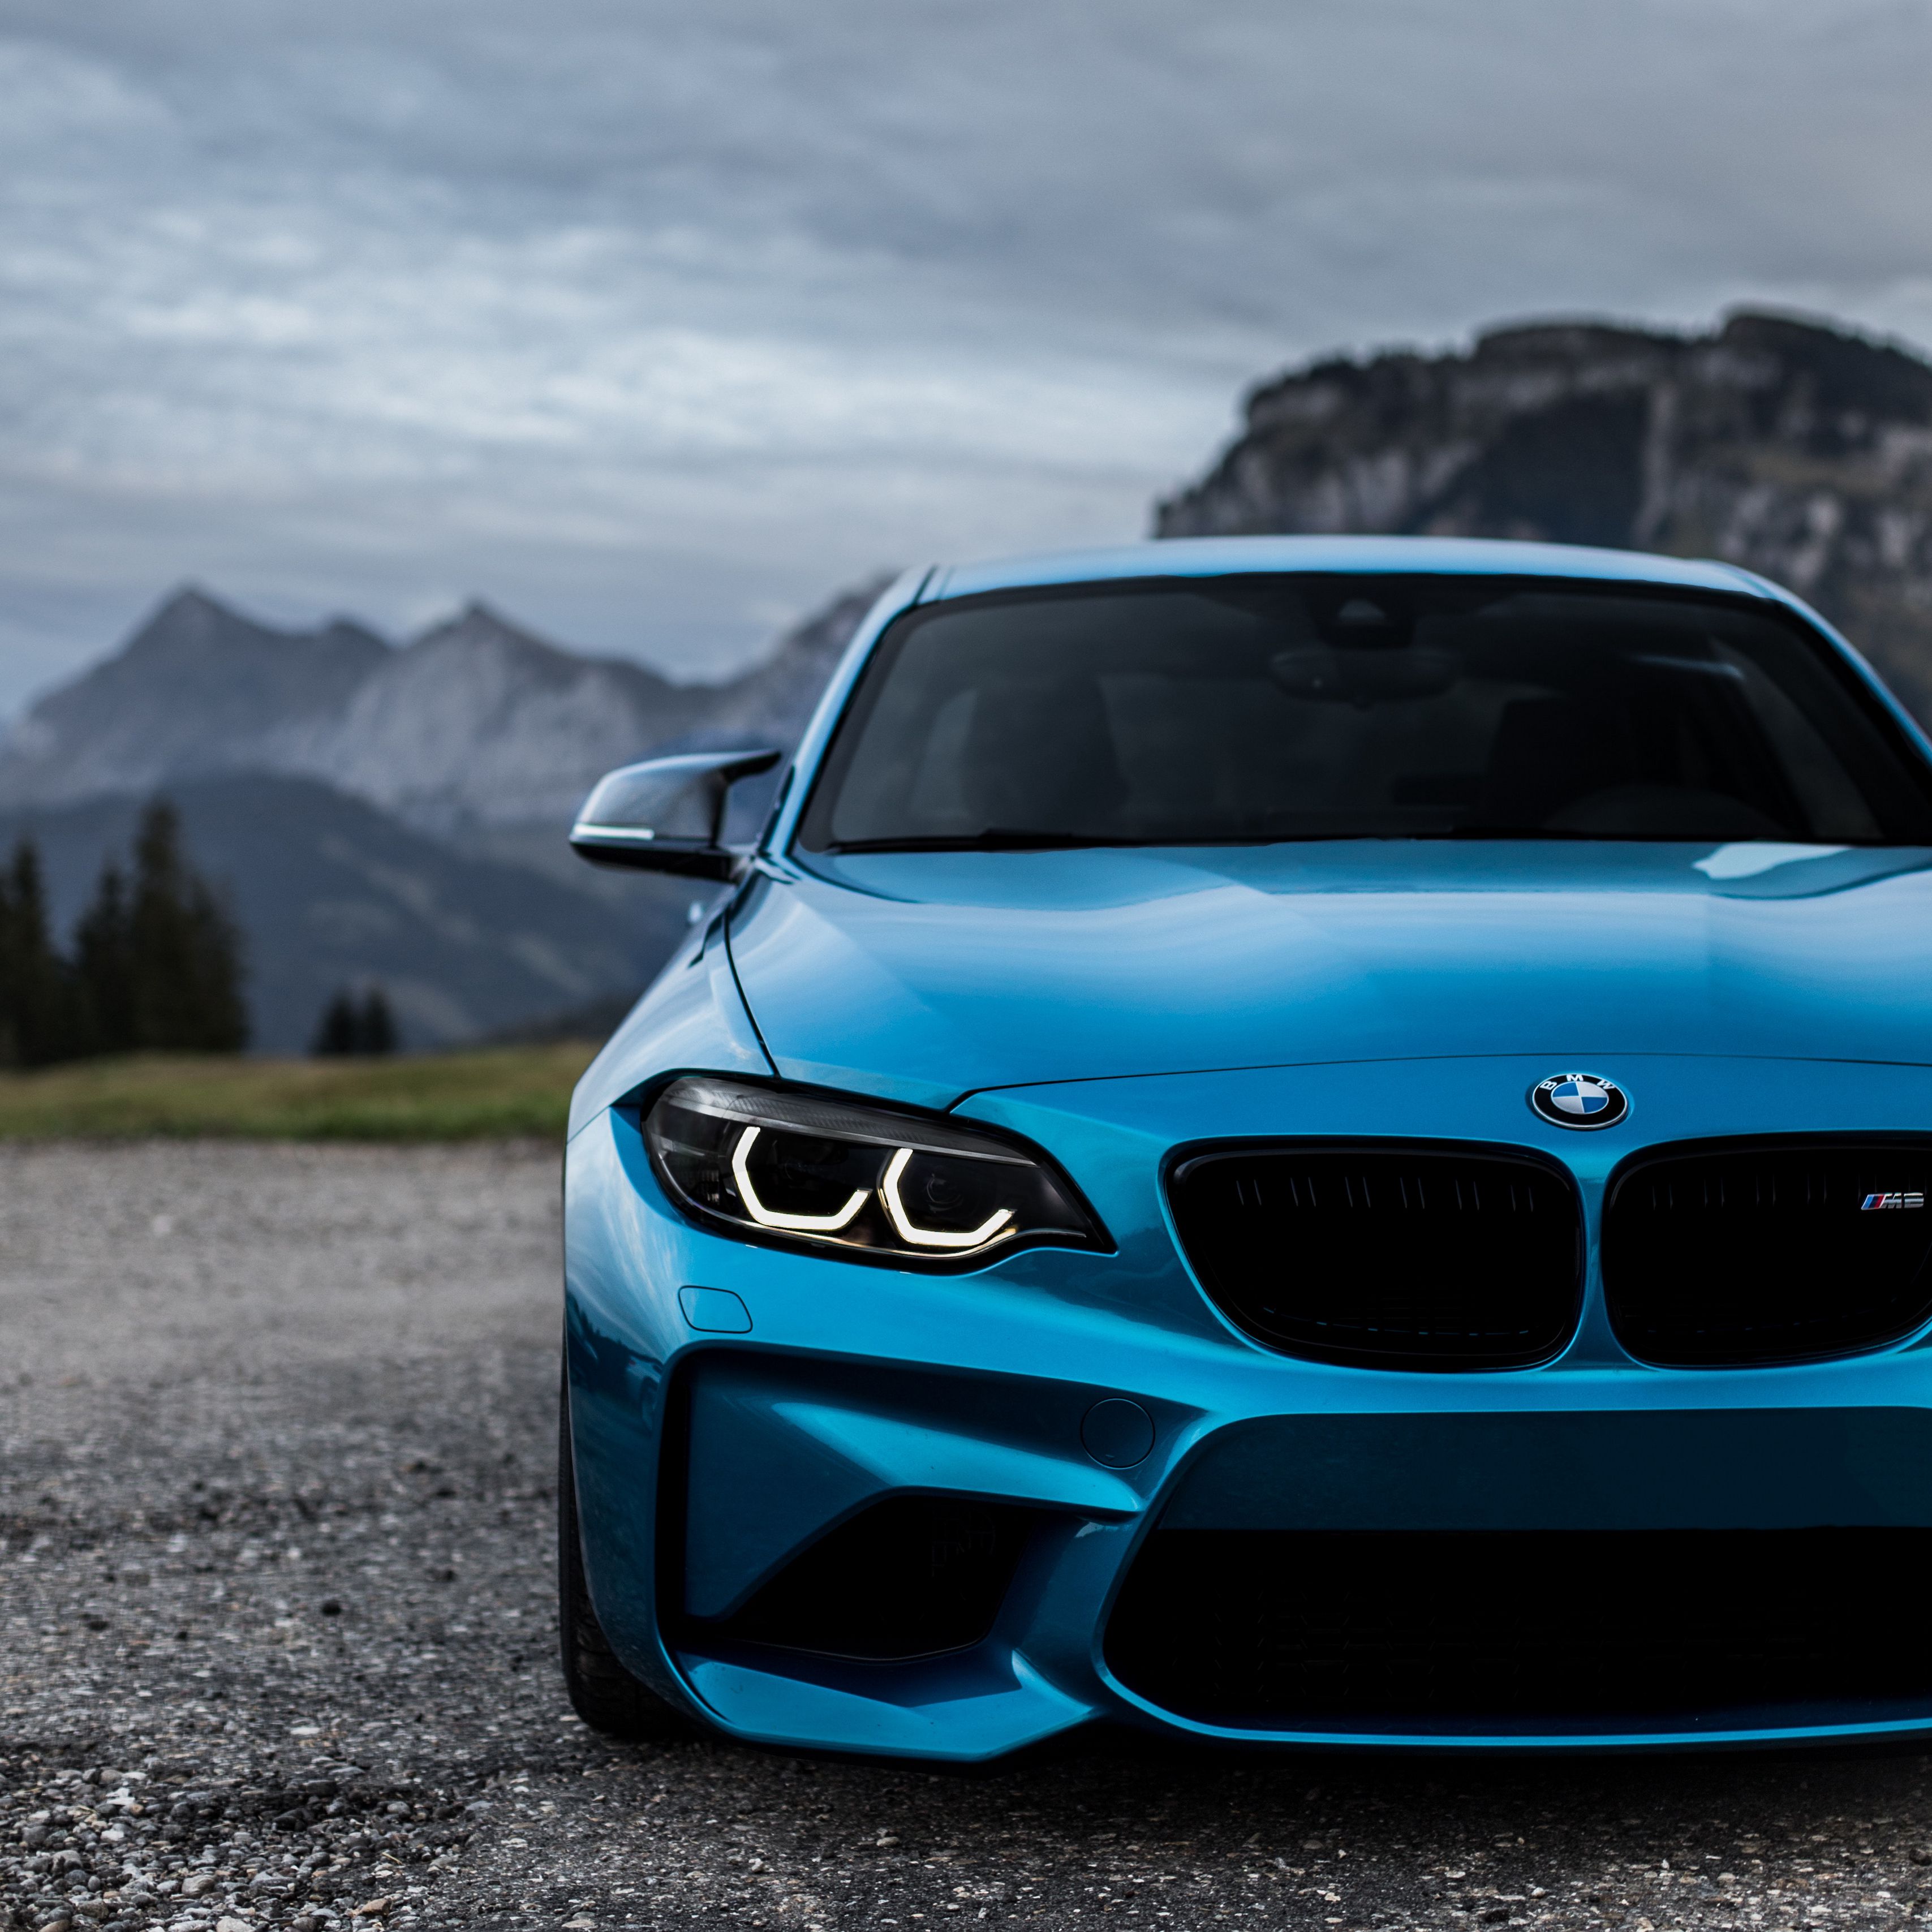 Đặc tả BMW M2 bằng cách nói về thiết kế tối giản và năng suất mạnh mẽ của xe, hấp dẫn người xem đến xem hình ảnh liên quan. Ví dụ: BMW M2 sẽ đưa bạn đến những trải nghiệm tuyệt vời nhất trên đường, từ thiết kế ấn tượng đến sức mạnh 405 mã lực của động cơ tăng áp.